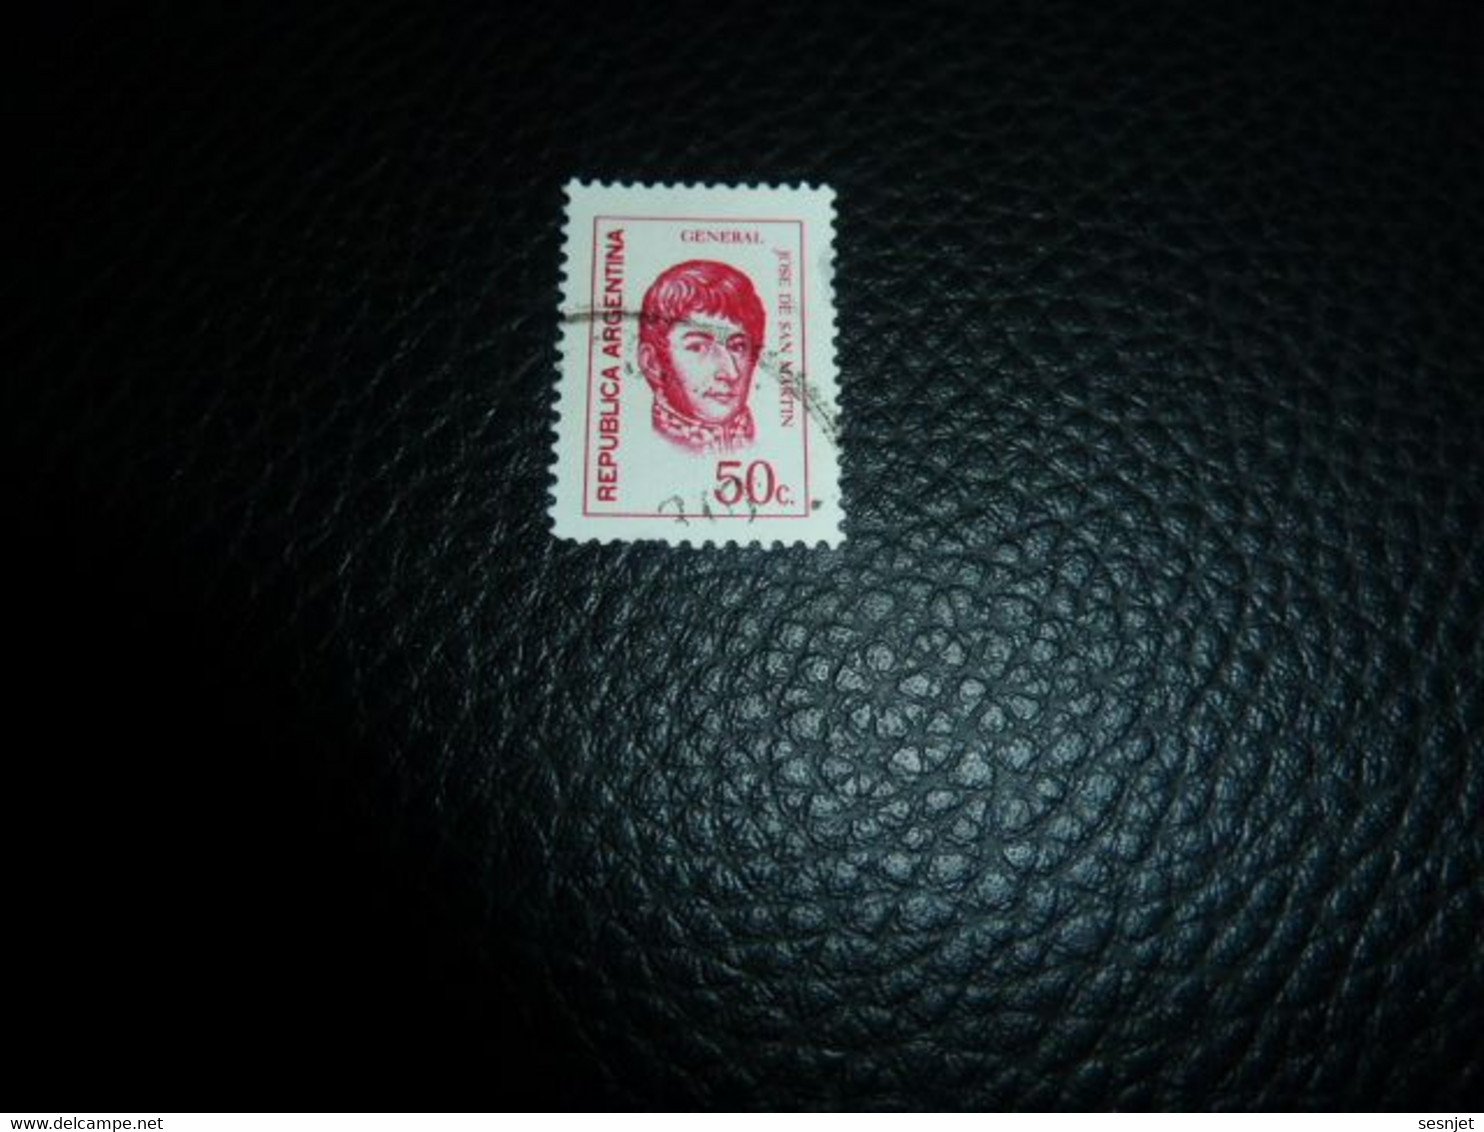 Republica Argentina - Général José De San Martin - 50 C. - Yt 936 - Carmin - Oblitéré - Année 1973 - - Used Stamps